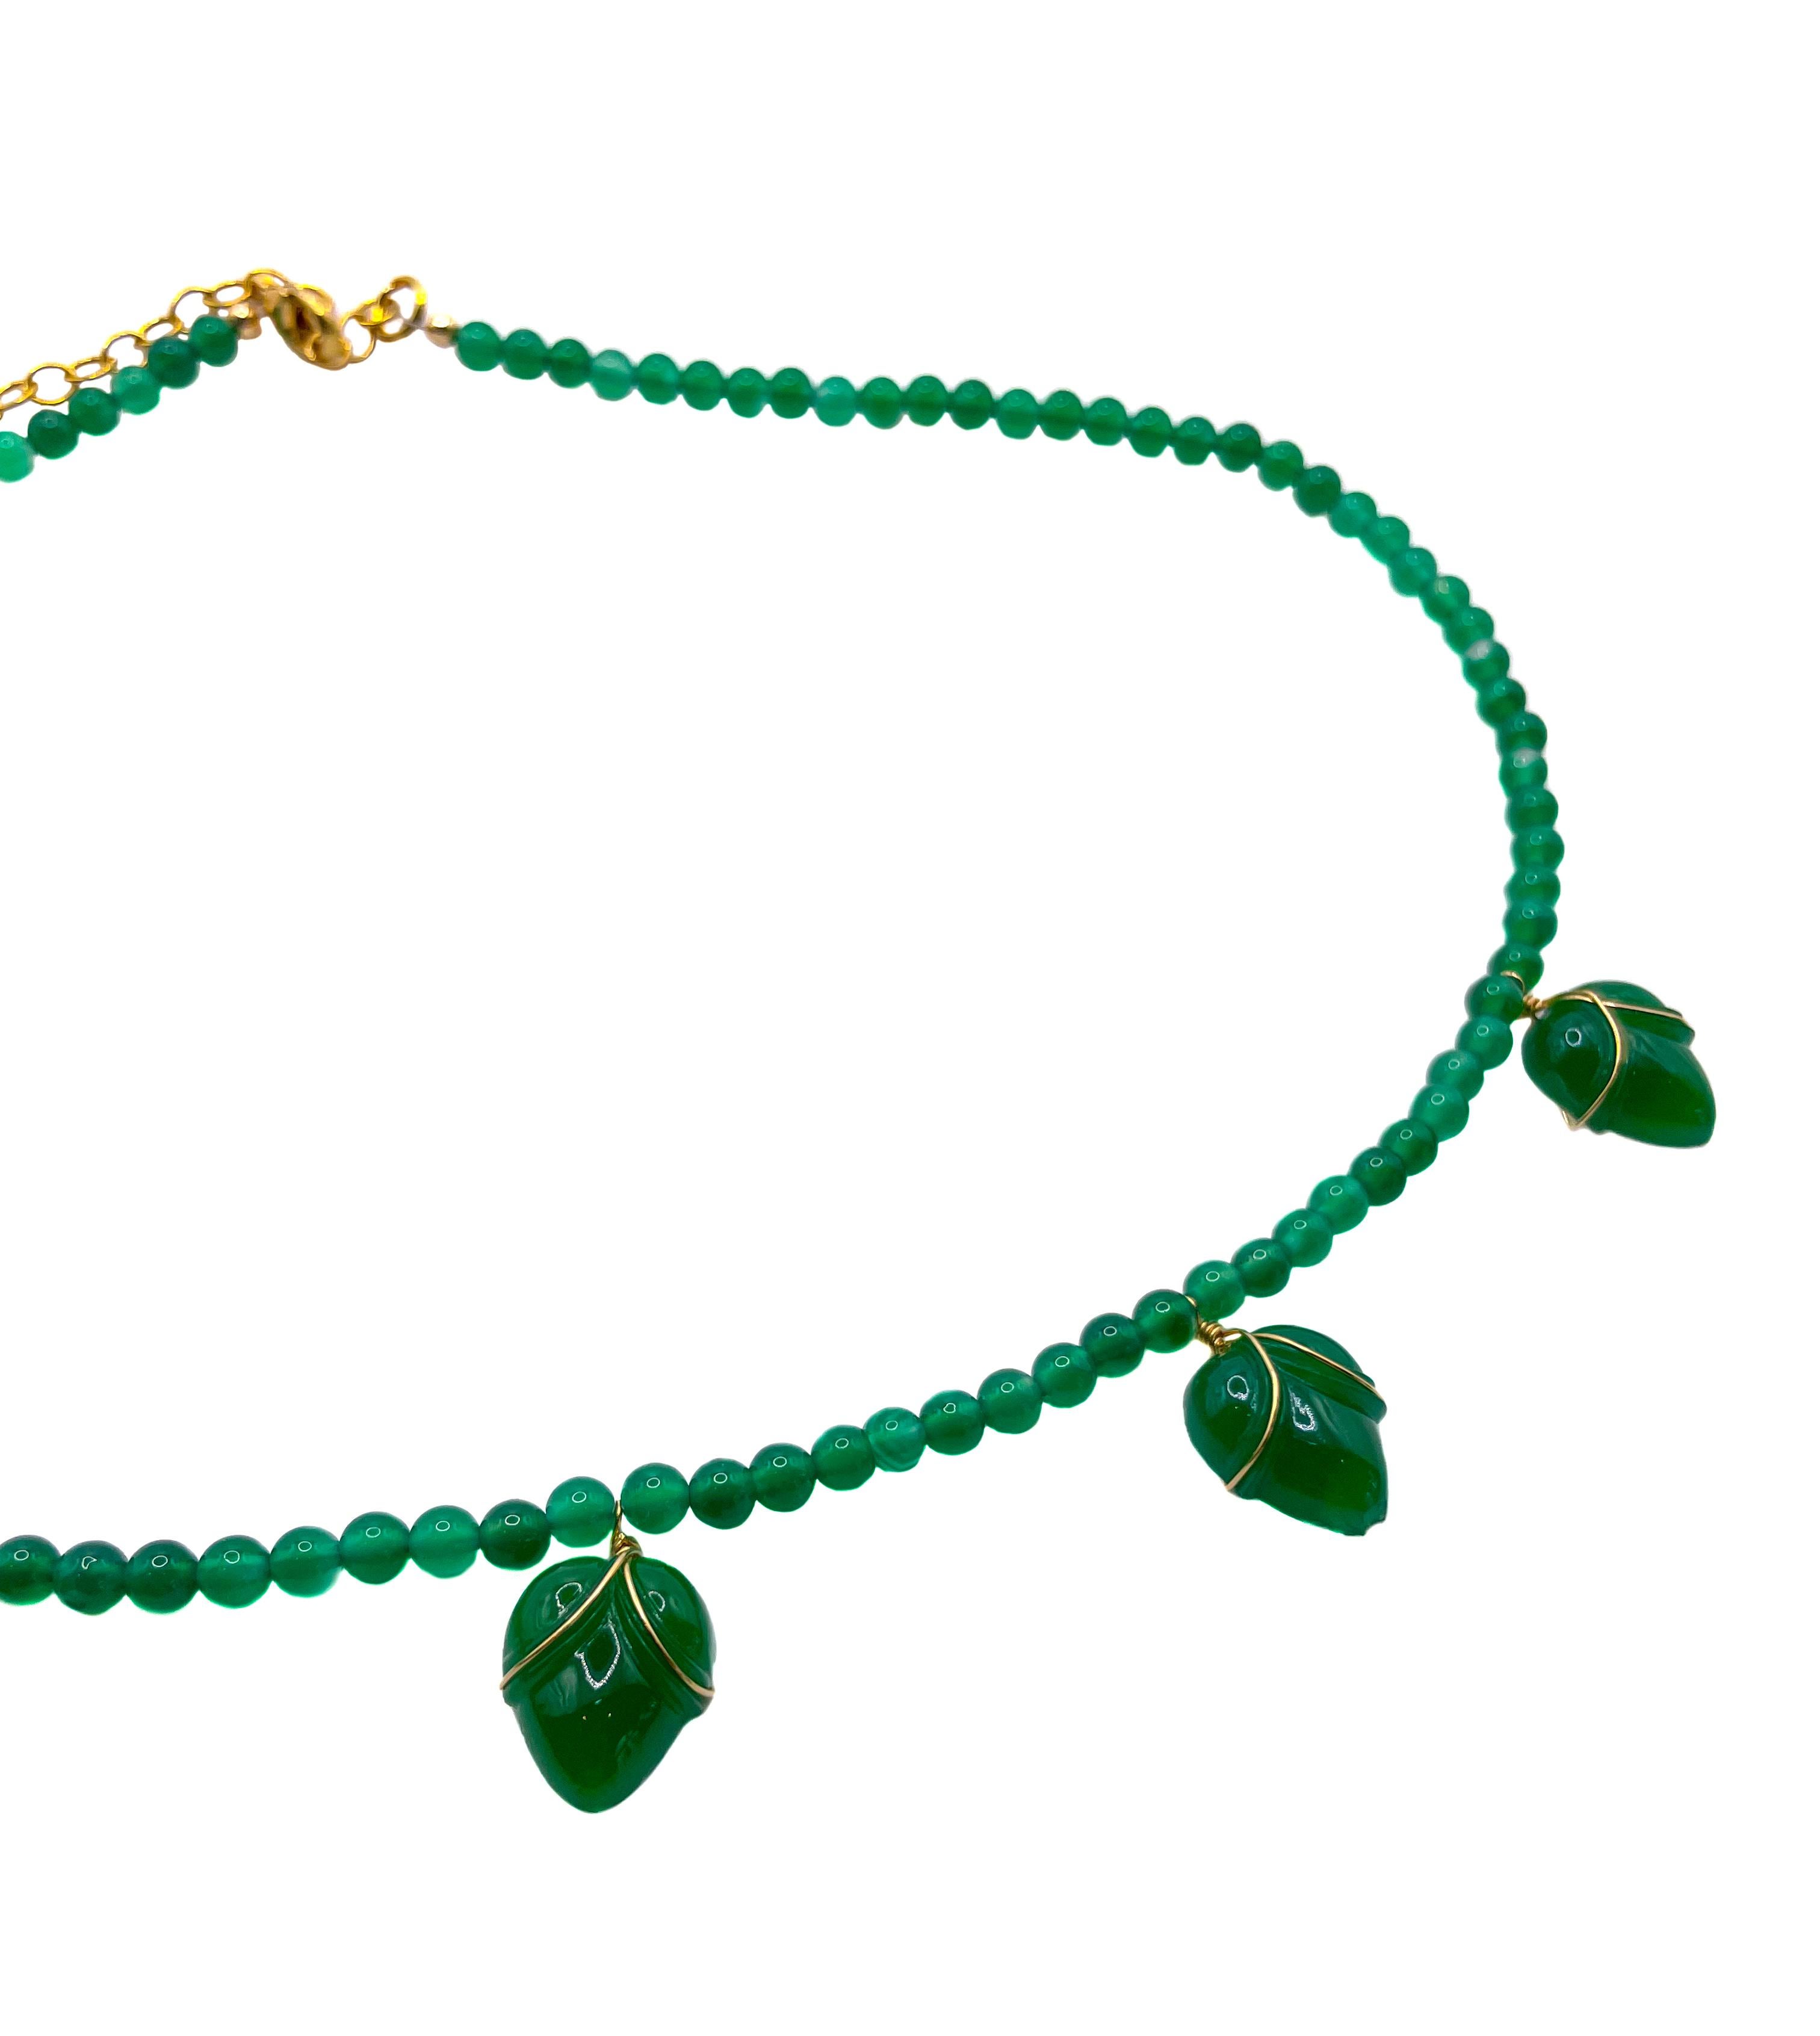 Ce collier de perles vert émeraude, unique en son genre, présente cinq boutons de fleurs en verre fabriqués à partir de verre vintage original de la République tchèque des années 1950. Chaque bouton de fleur en verre est enveloppé individuellement